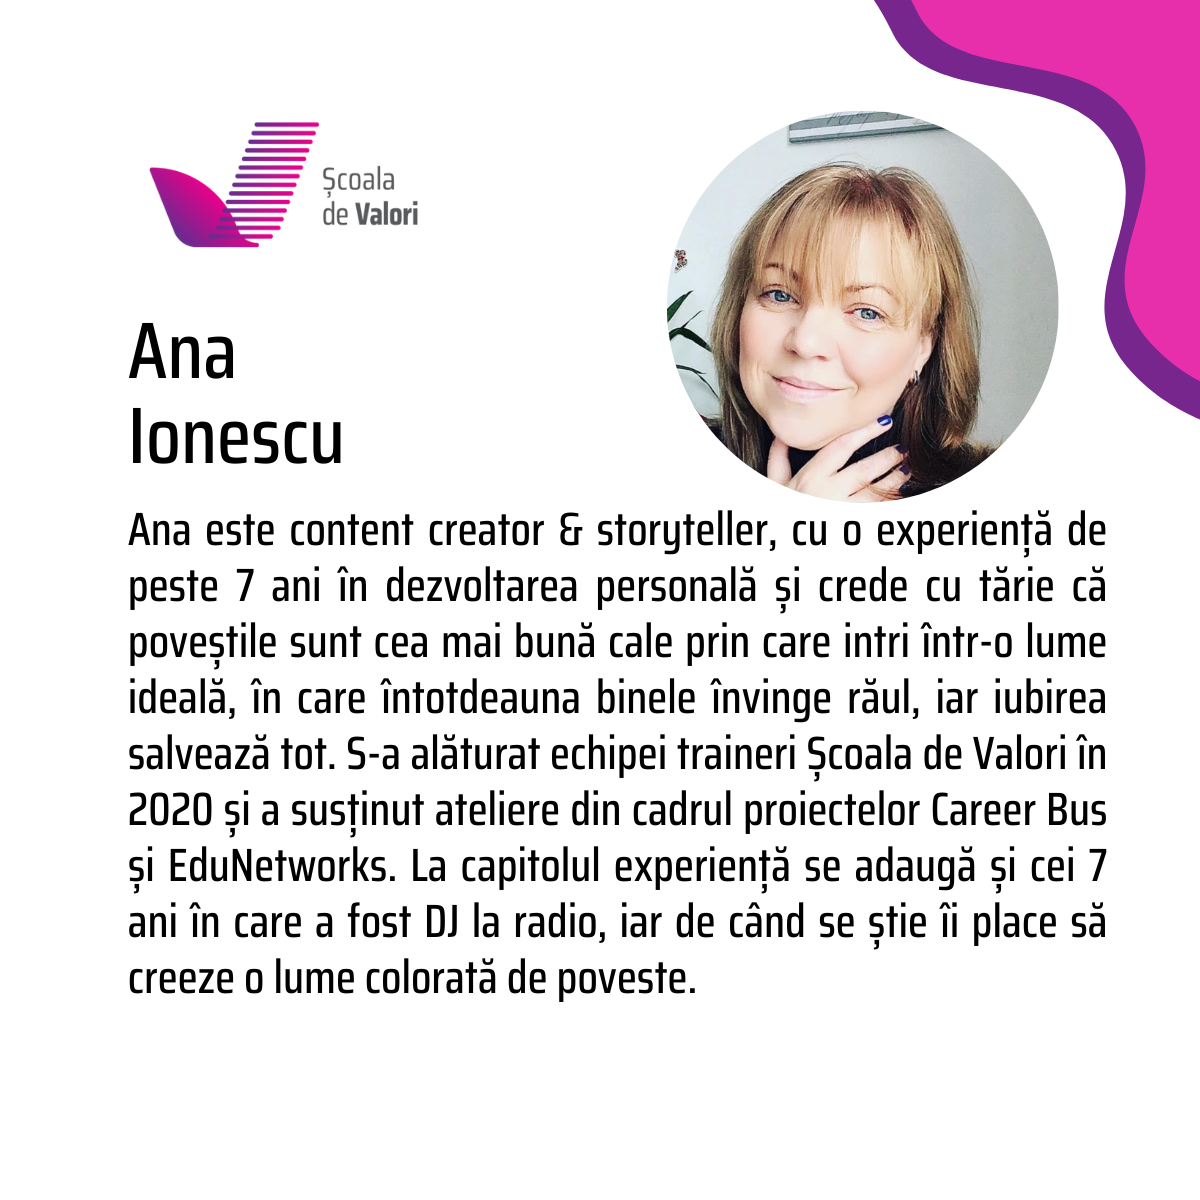 Ana Ionescu